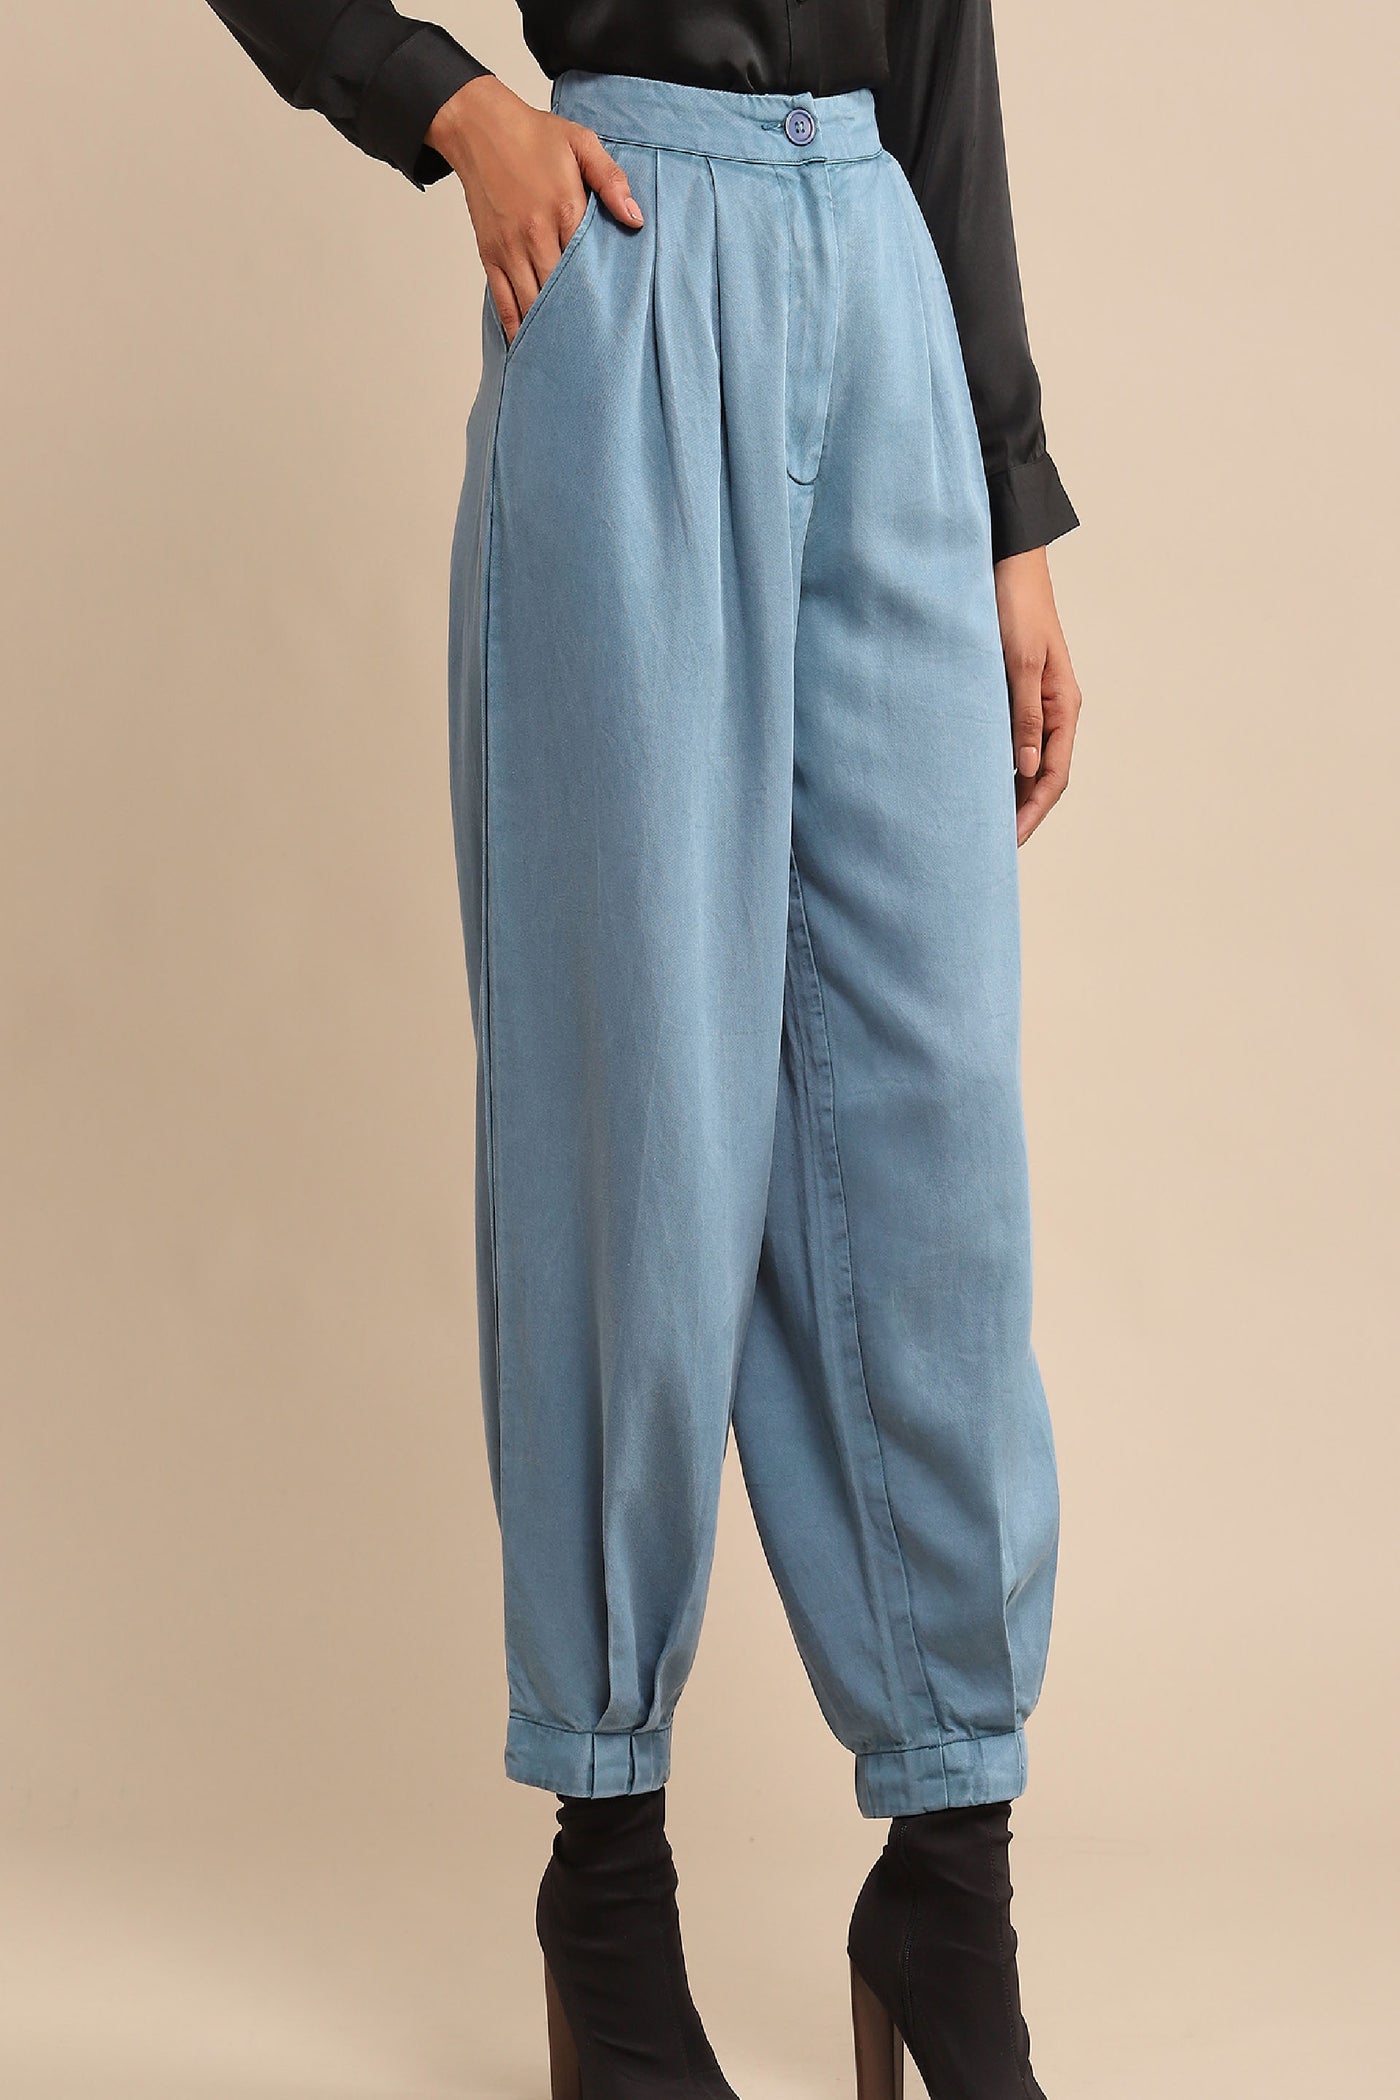 Ritu Kumar Indigo Solid Tapered Pant indian designer wear online shopping melange singapore